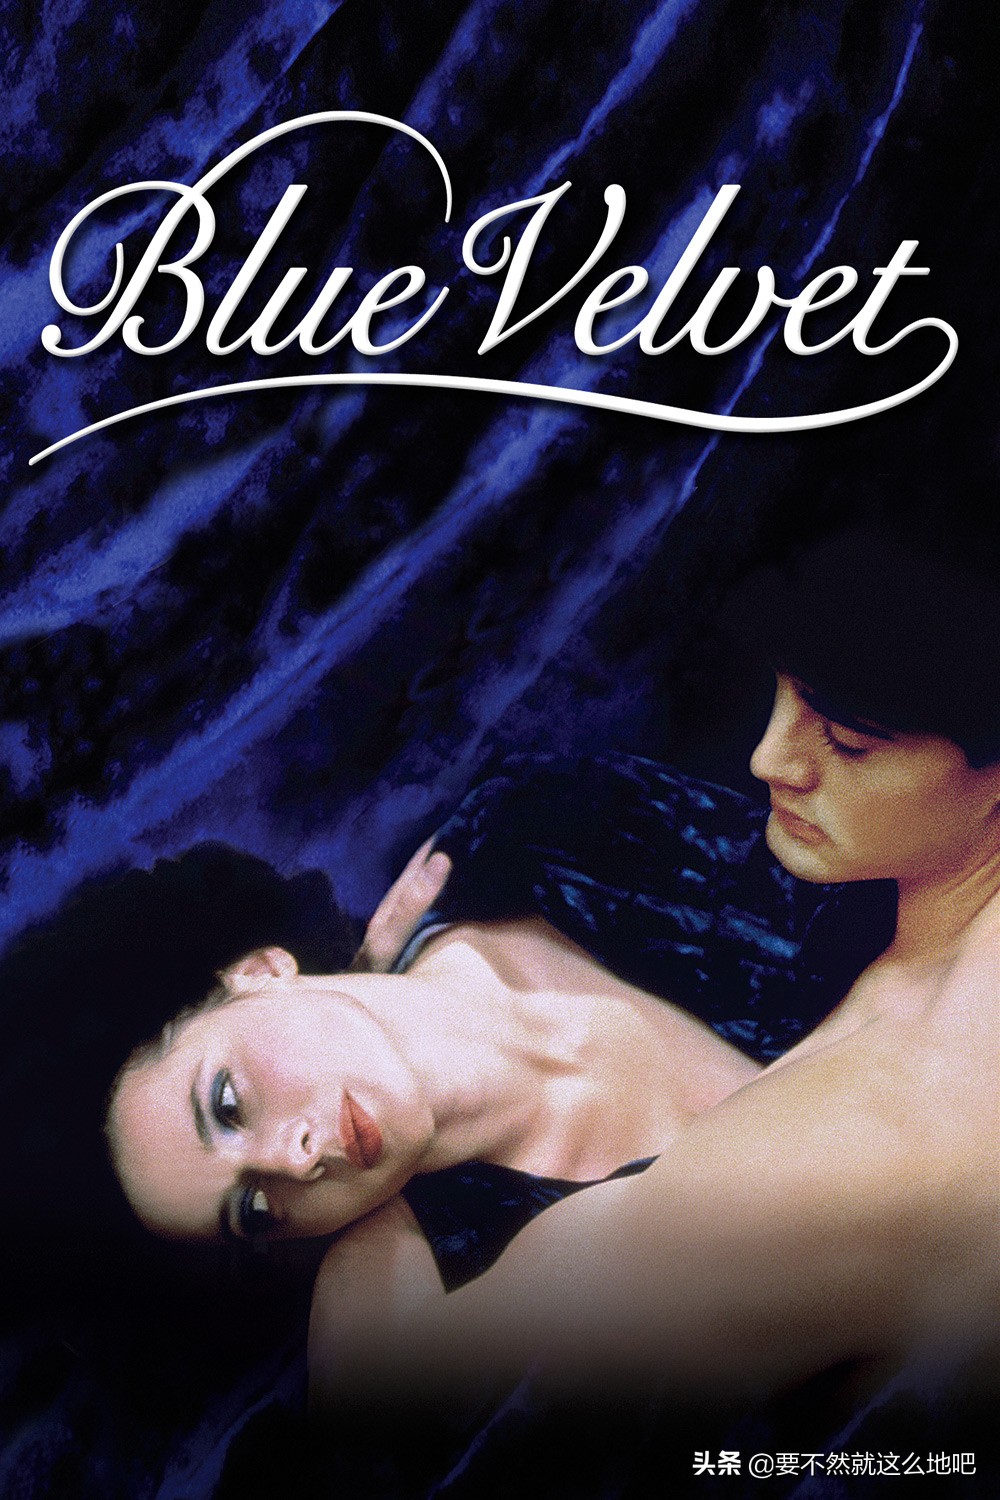 《蓝丝绒》：被称为世界上最难懂的电影，外衣下埋藏着野性的心